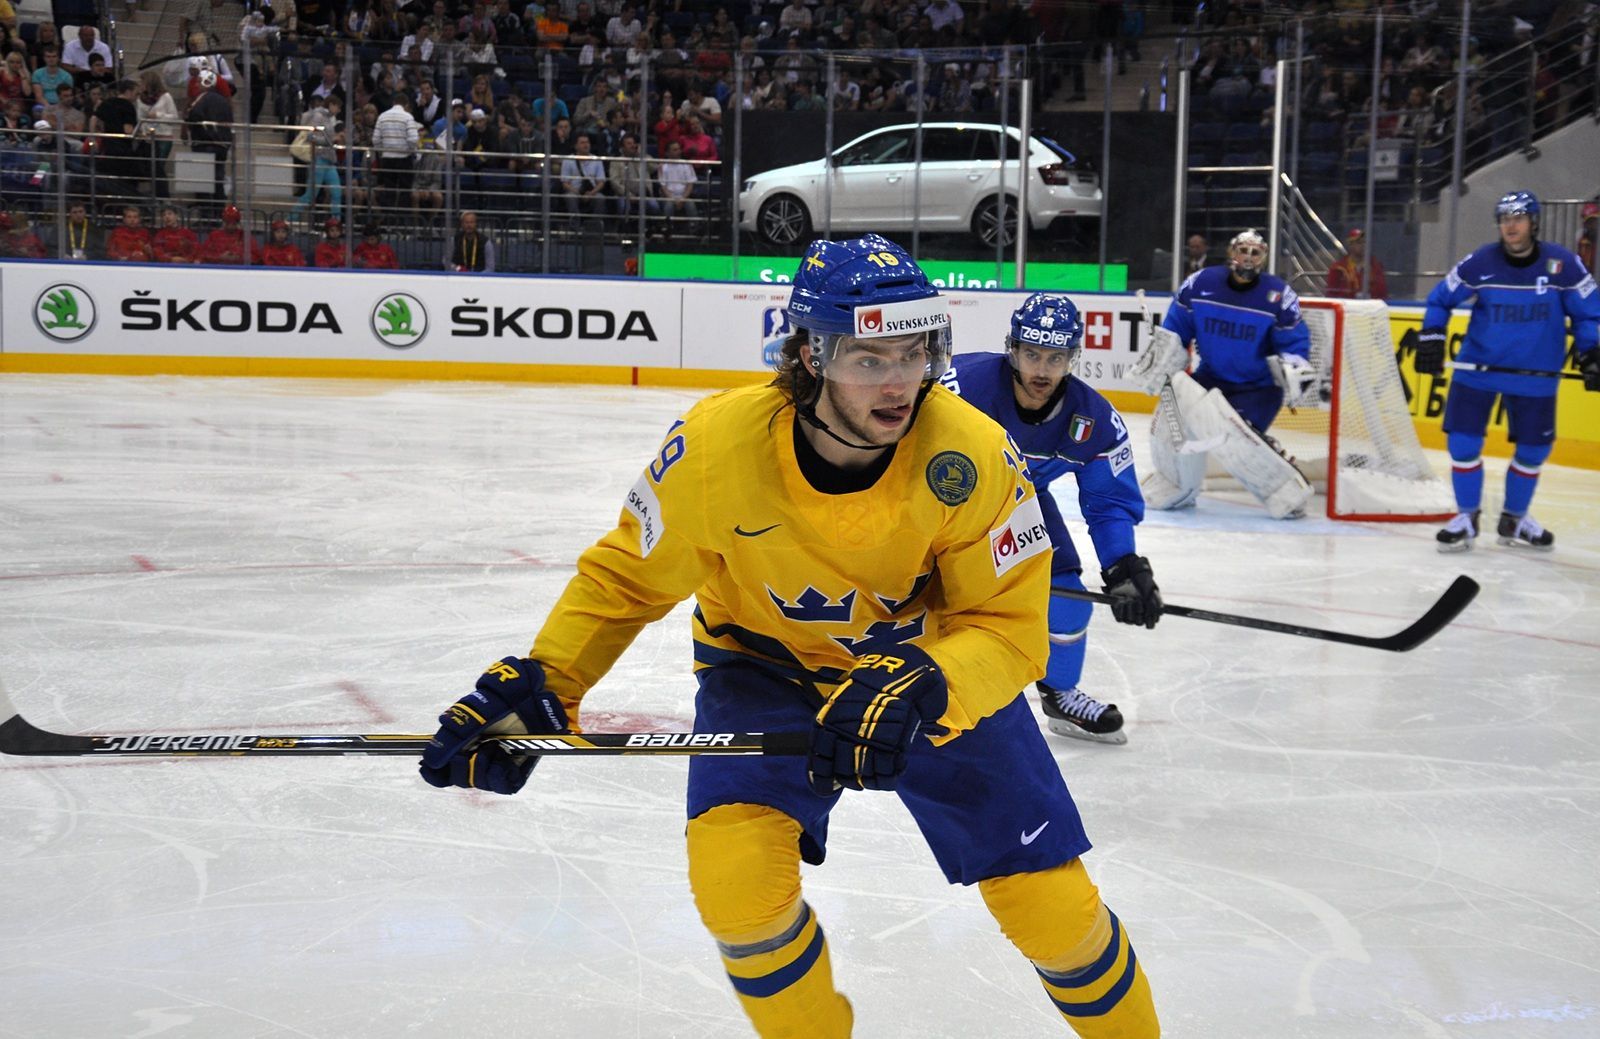 Švédsko vs. Itálie na MS v hokeji 2014 (Järnkrok)